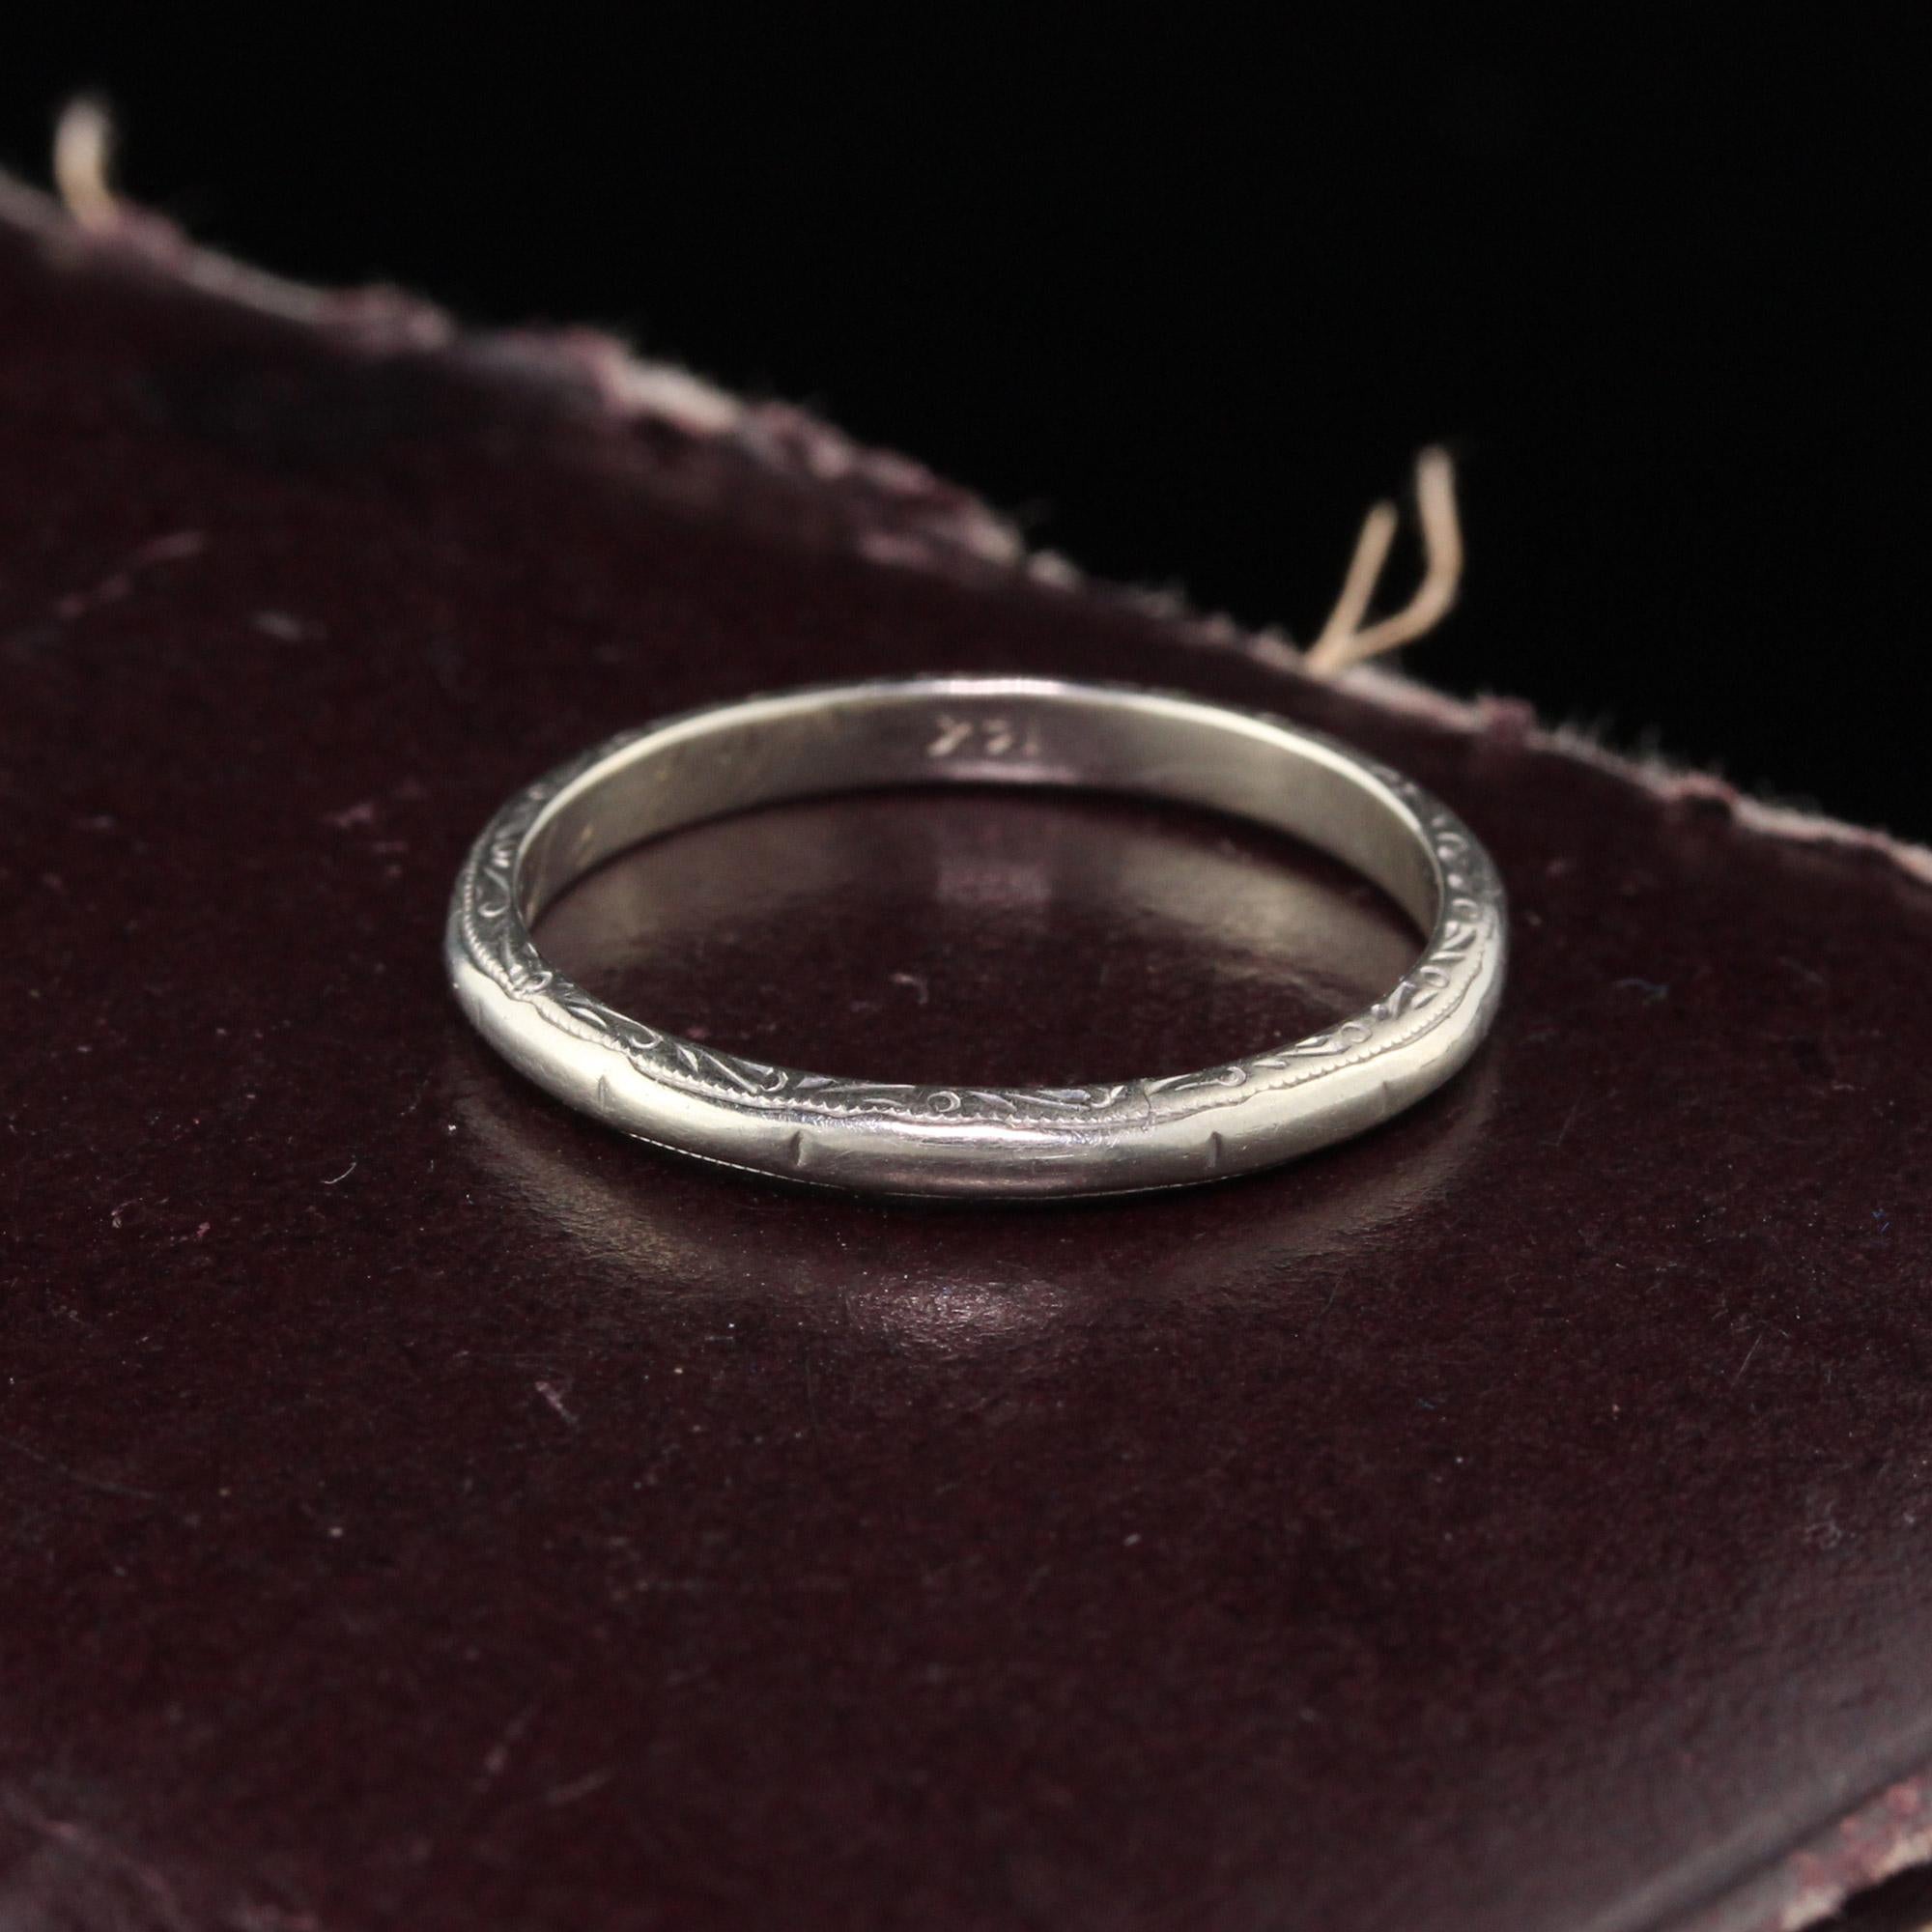 Schöner Art Deco Ehering in gutem Zustand.

#R0363

Metall: 14K Weißgold

Gewicht: 1,7 Gramm

Ringgröße: 6

*Dieser Ring ist leider nicht größenverstellbar.

Abmessungen: 2.1 mm breit

Maß vom Finger bis zur Spitze des Rings: 1.5 mm 

Gravur im